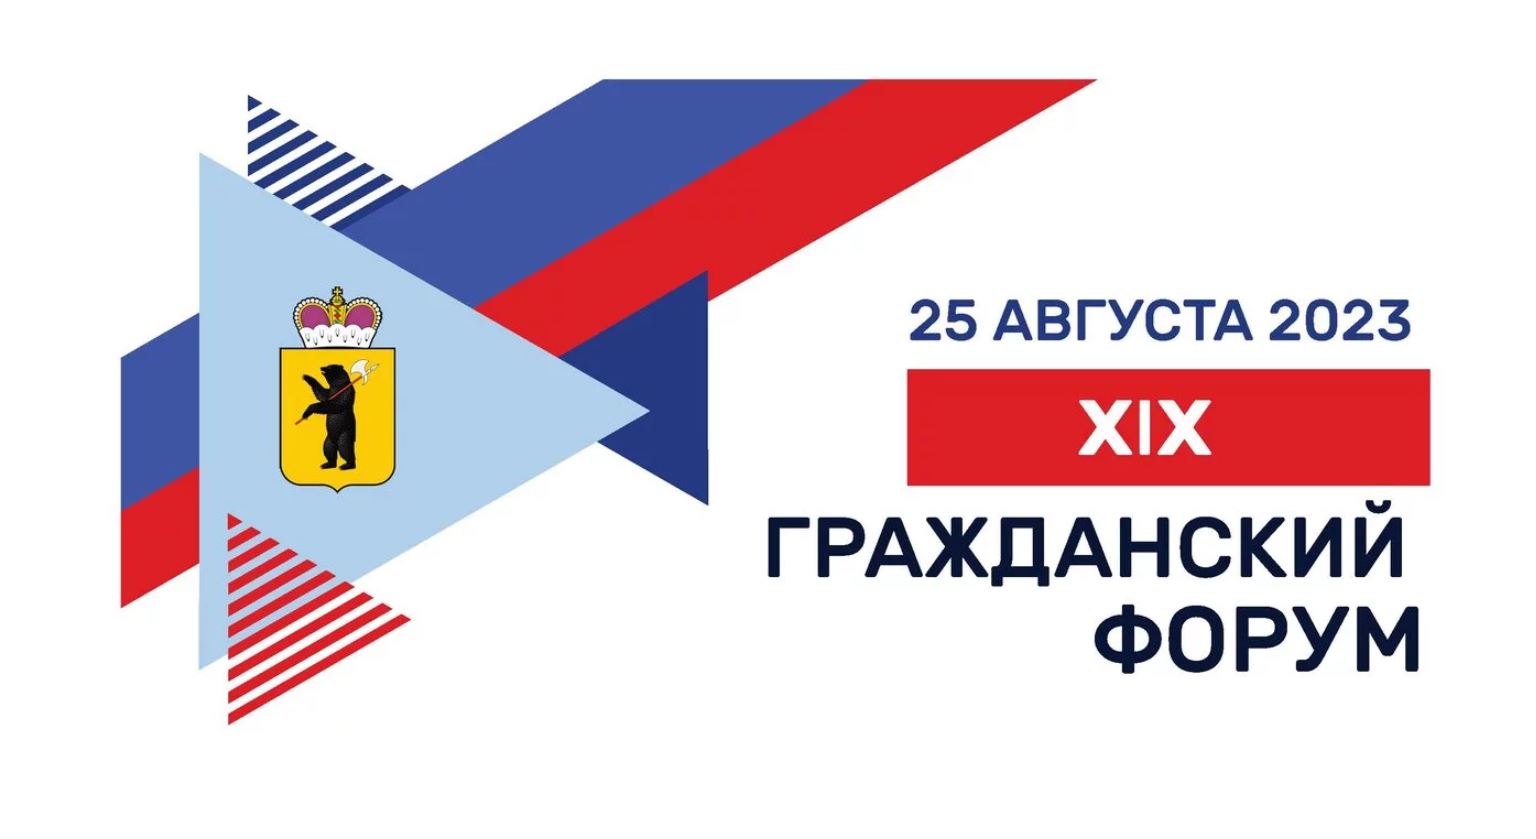 19 гражданский форум состоится в Ярославле 25 августа